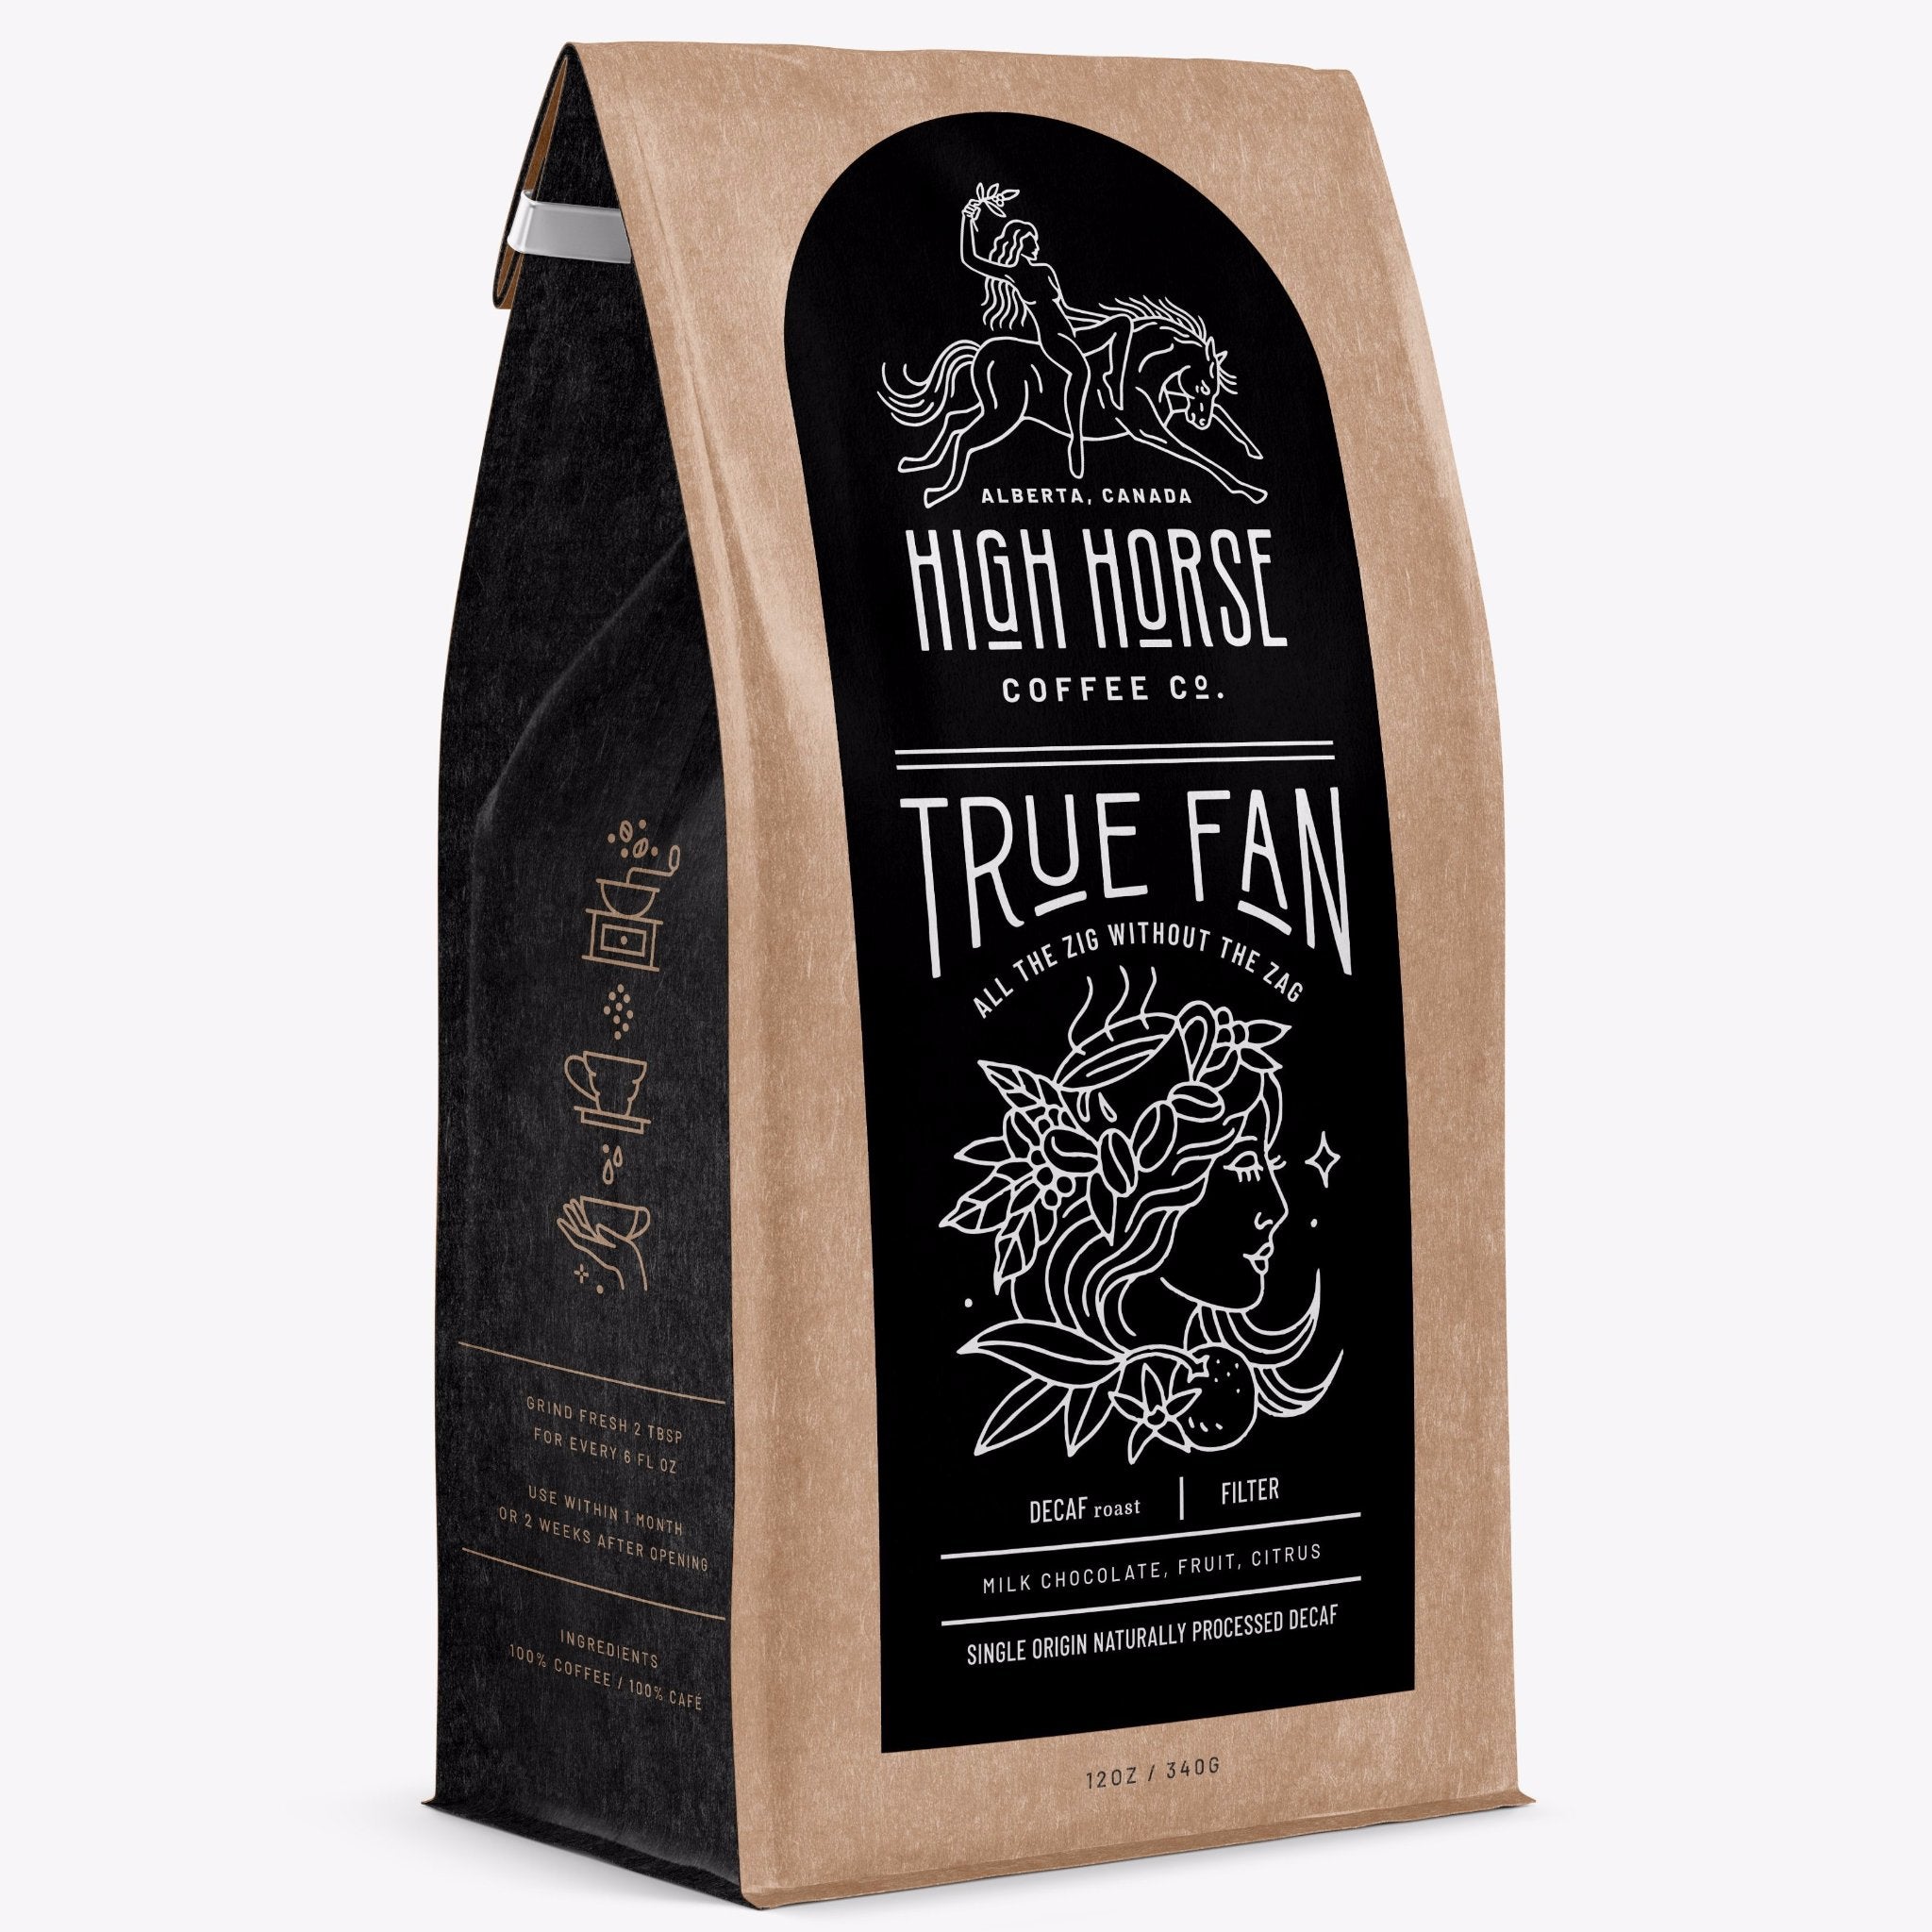 True Fan - High Horse Coffee Company